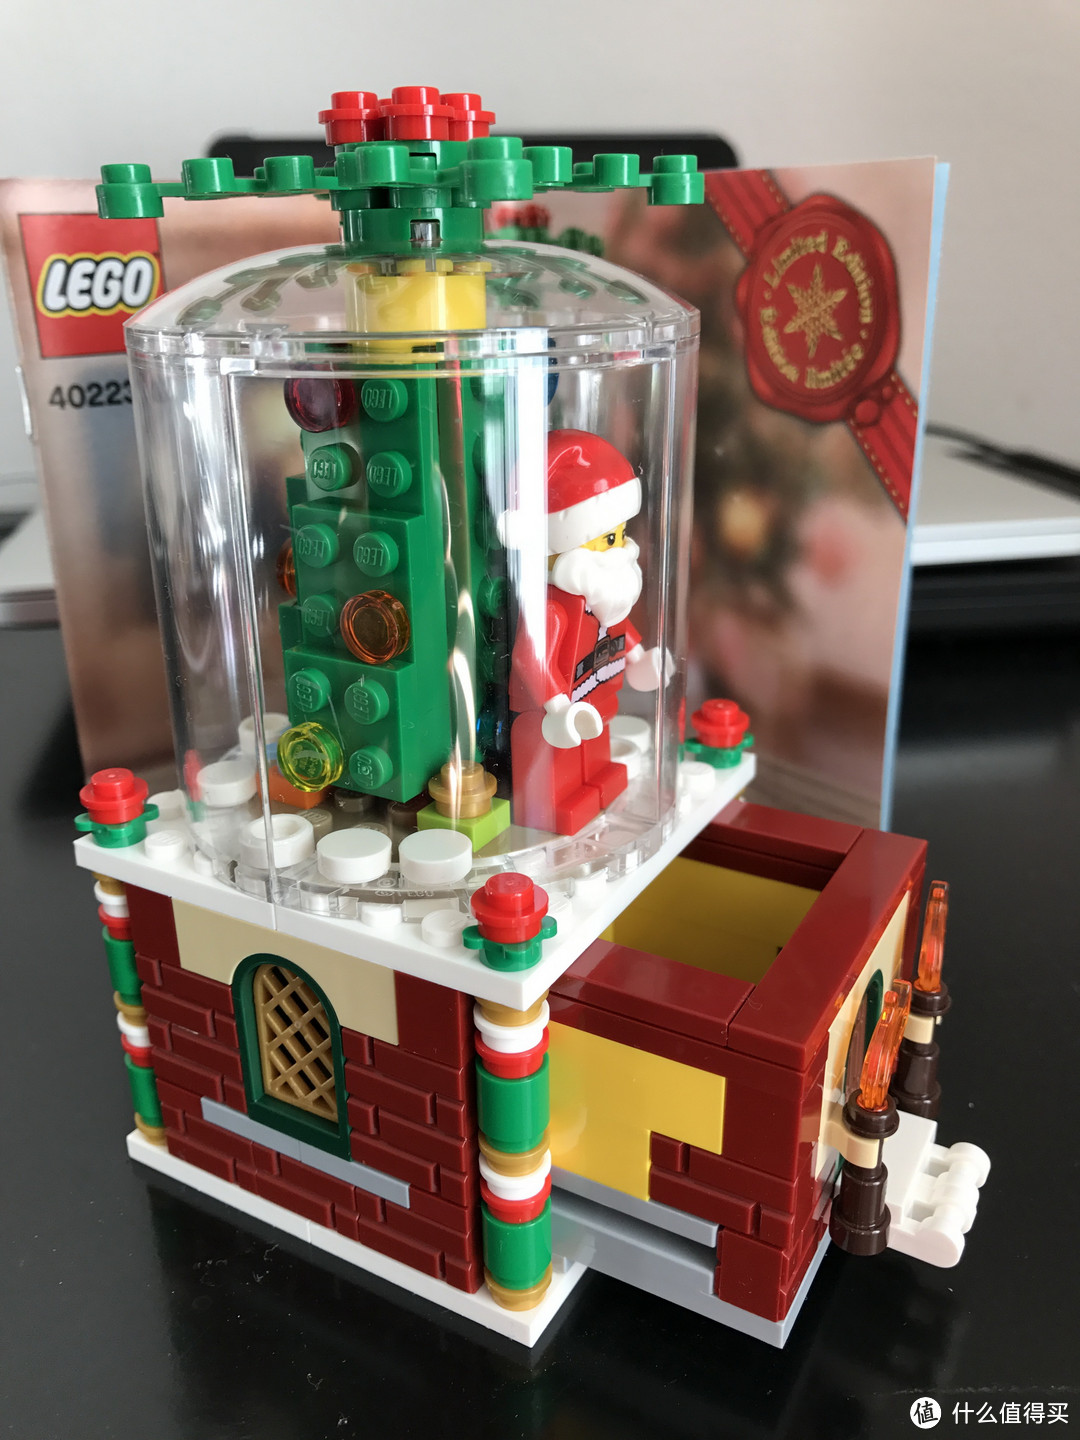 LEGO 乐高 拼拼乐 40223 圣诞饰品 晒单